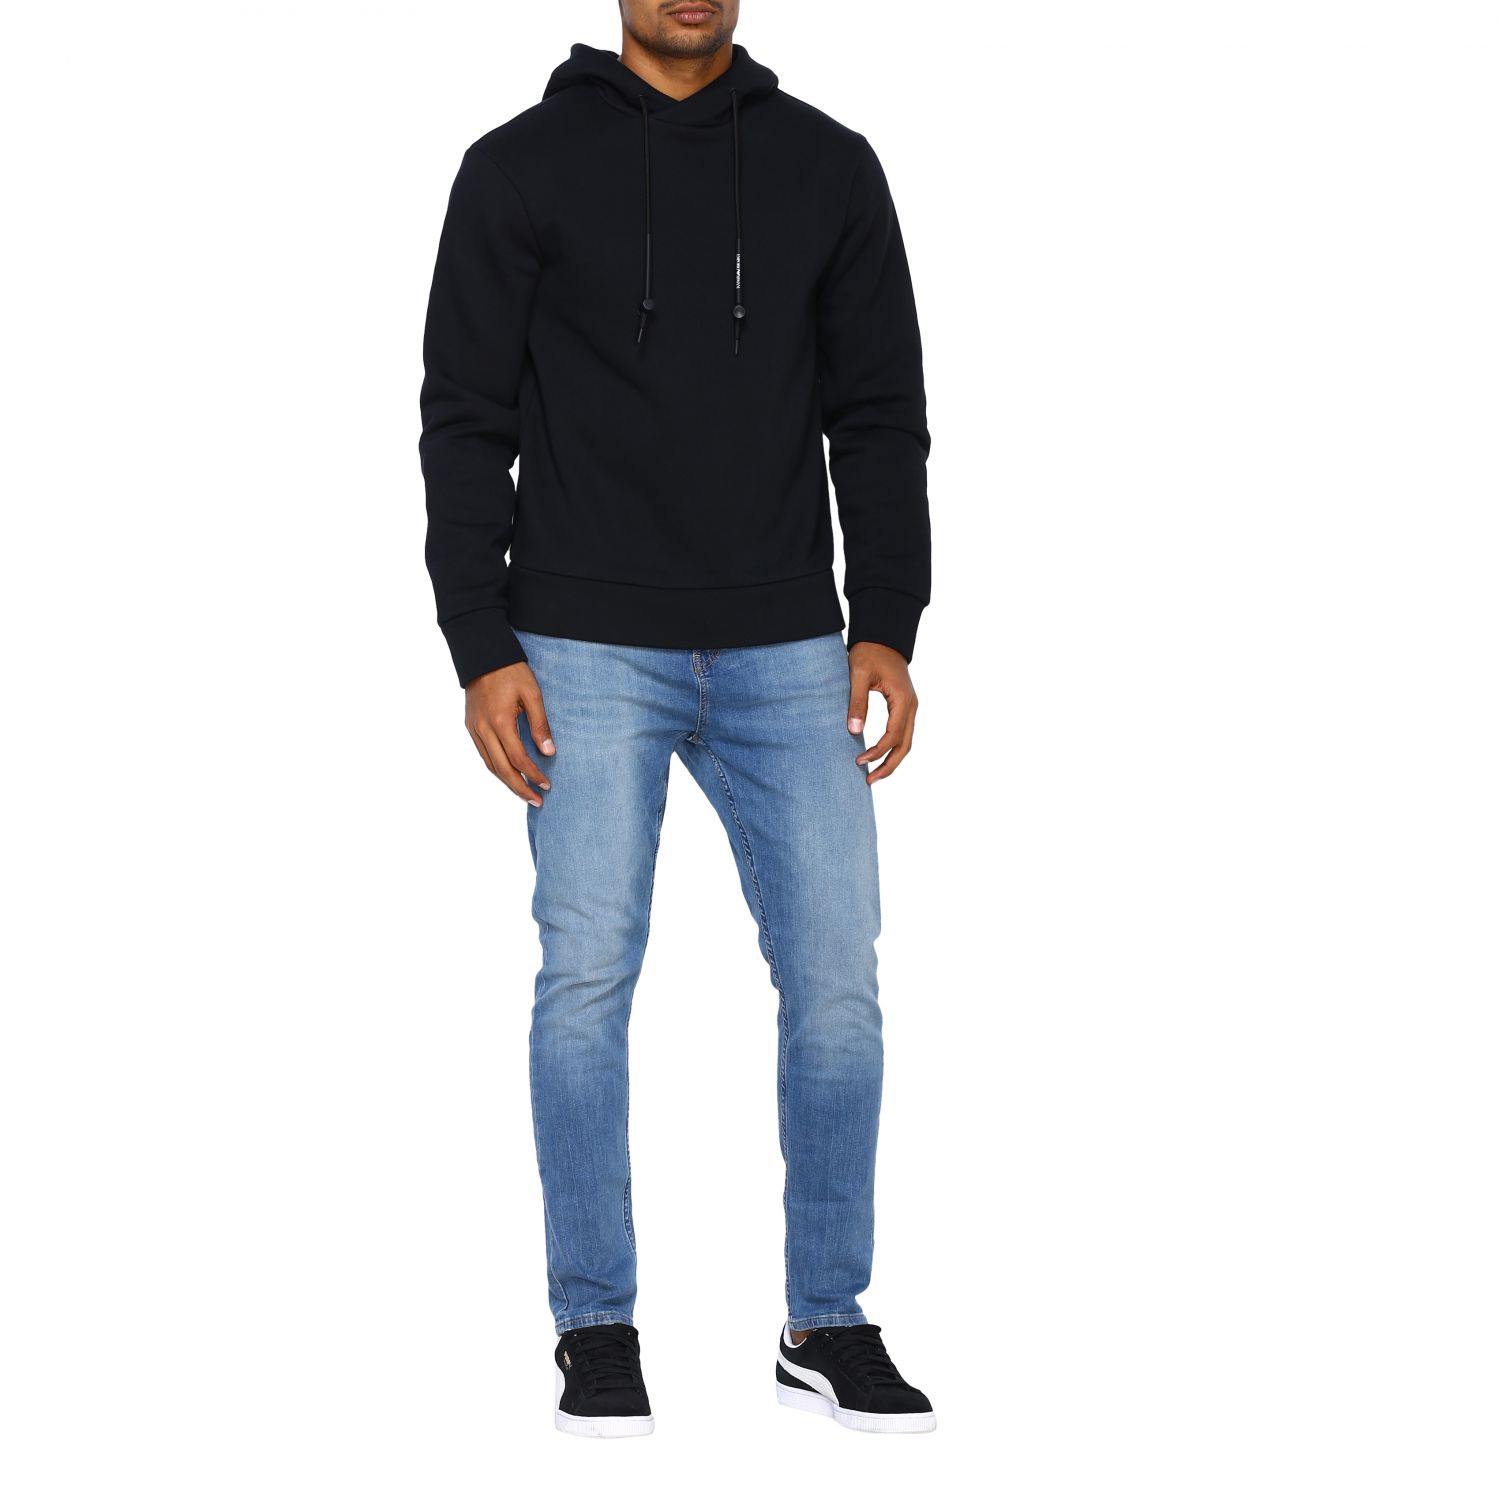 Emporio Armani Outlet: sweatshirt for men - Black | Emporio Armani